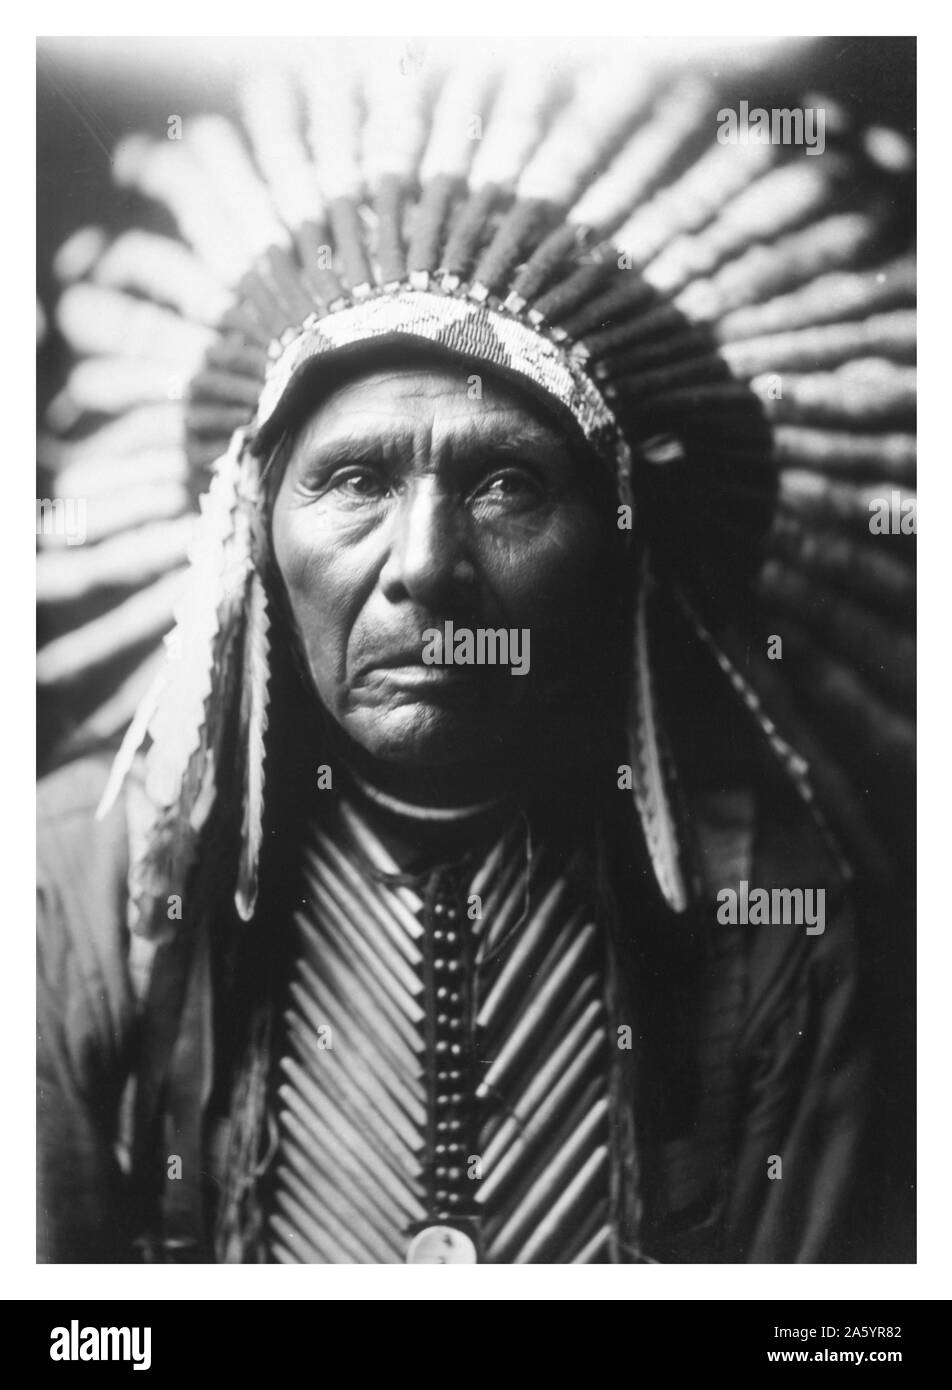 Stampa fotografica di Chief tre cavalli fotografata da Edward Sheriff Curtis (1868-1952) American etnologo e fotografo del West americano e dei Nativi Americani i popoli. Datata 1905 Foto Stock